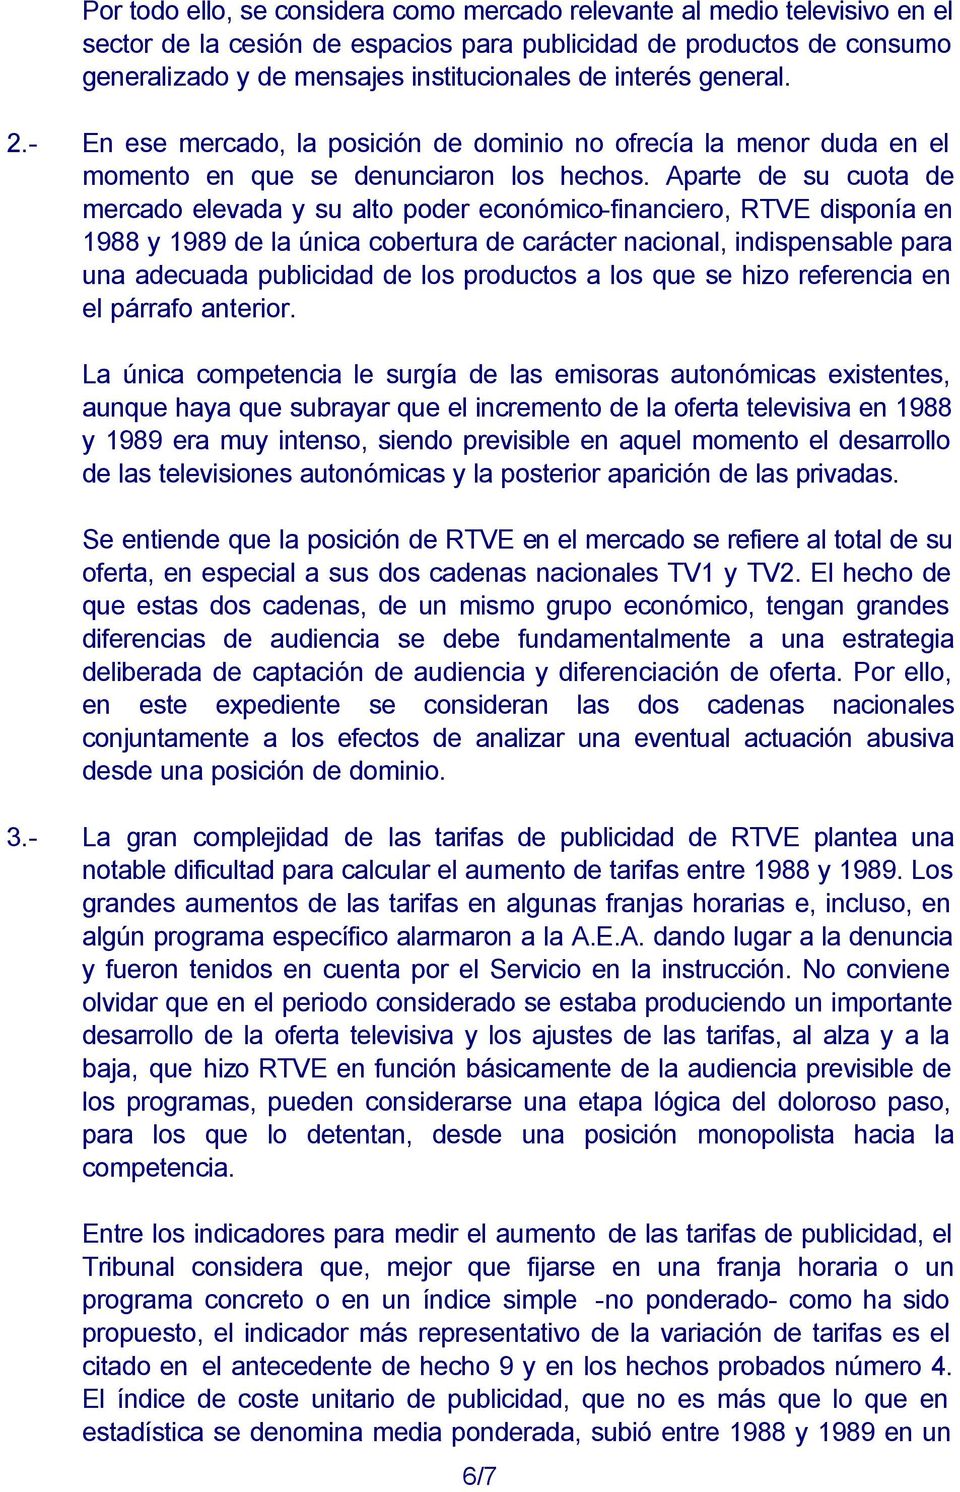 Aparte de su cuota de mercado elevada y su alto poder económico-financiero, RTVE disponía en 1988 y 1989 de la única cobertura de carácter nacional, indispensable para una adecuada publicidad de los